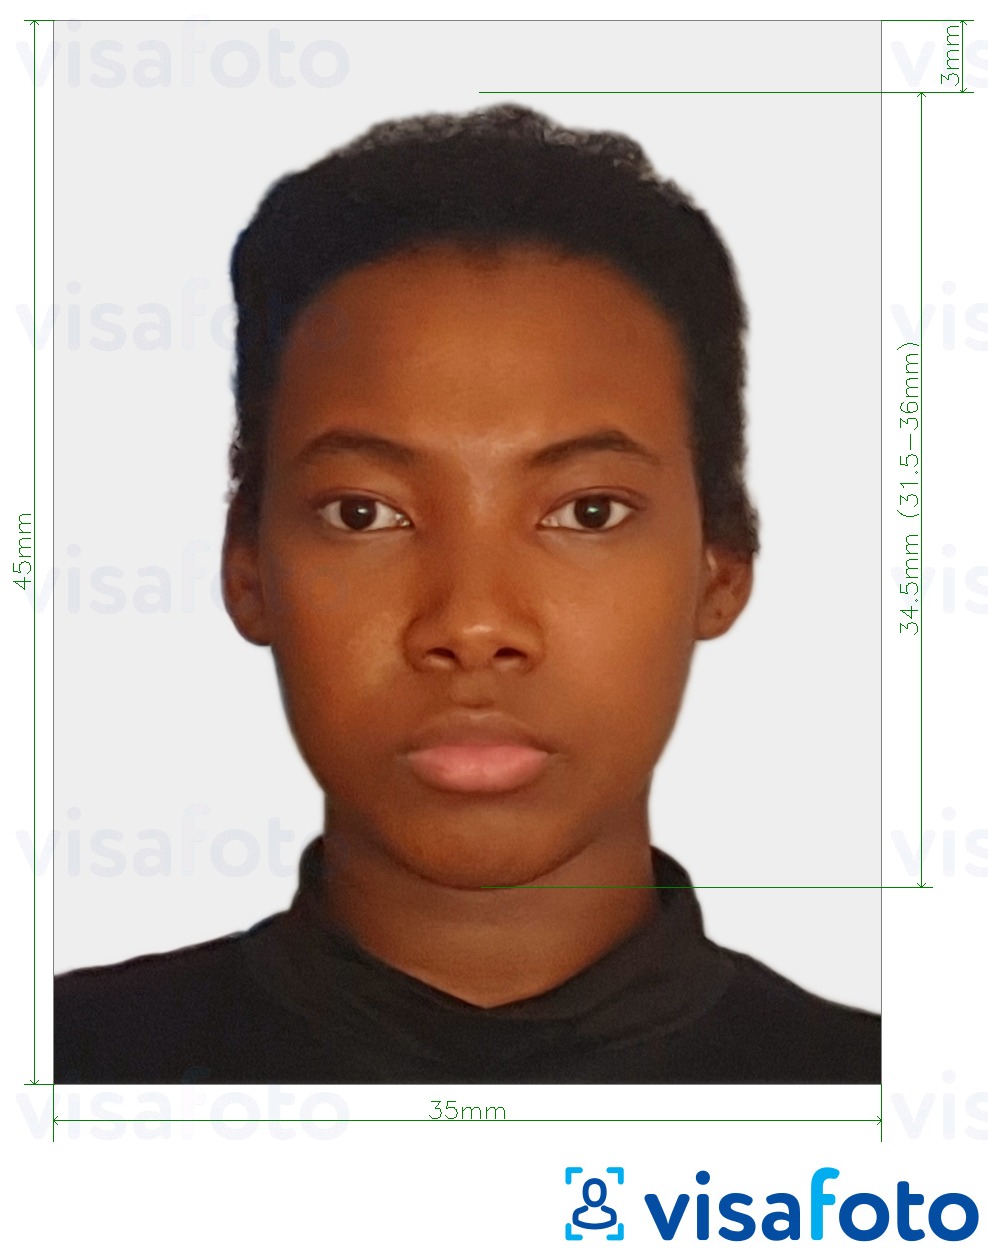 Ejemplo de foto para Côte d'Ivoire visa 4.5x3.5 cm (45x35 mm) con la especificación del tamaño exacto